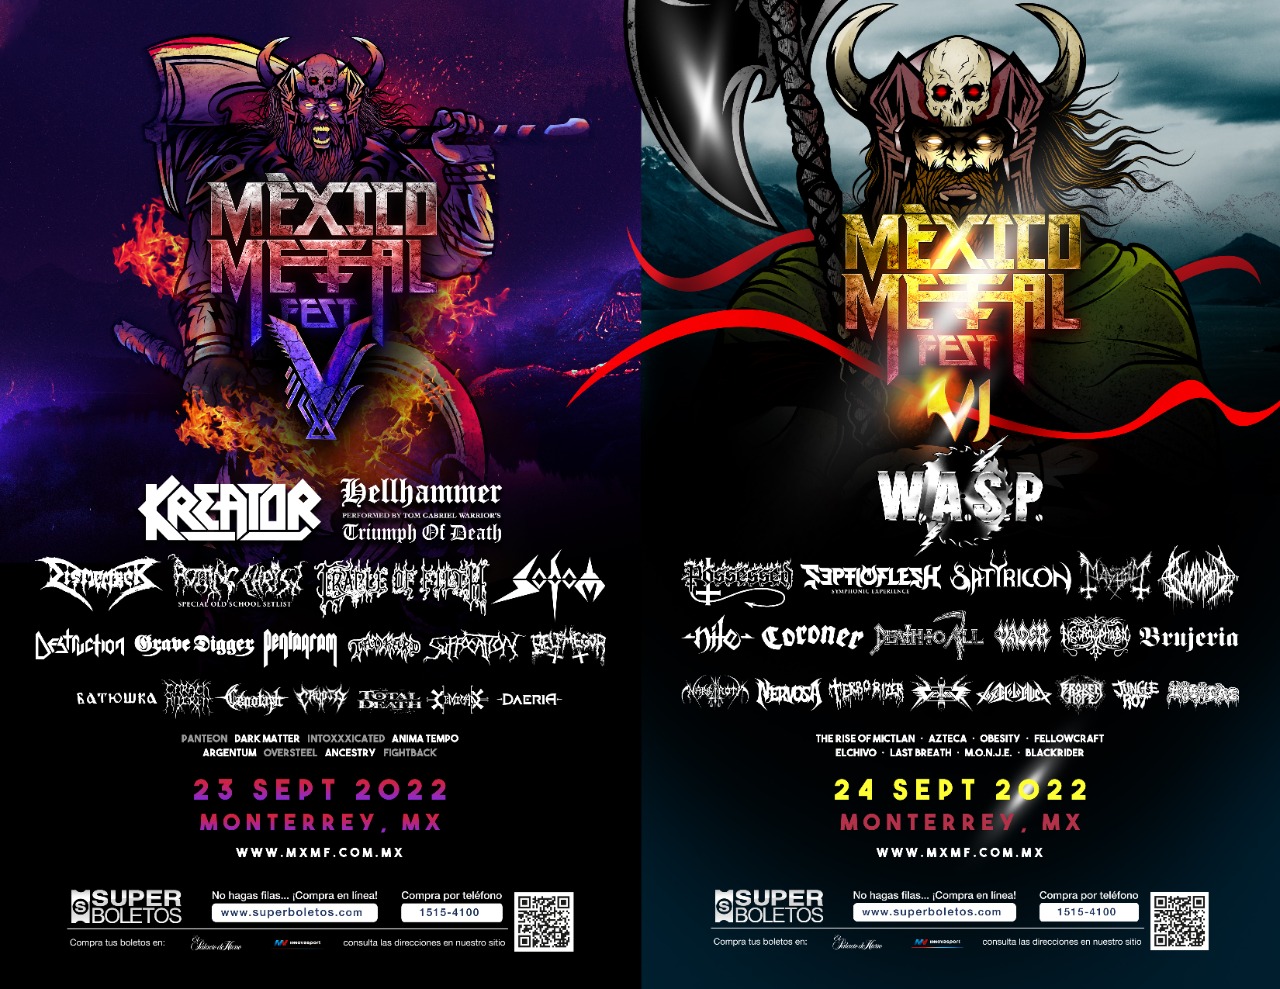 Mexico Metal on Twitter: "Sobrinos, que mejor forma de terminar el año que con el cartel final del y del #MxMFVI. Hay algunas extras agregadas al cartel Brujeria